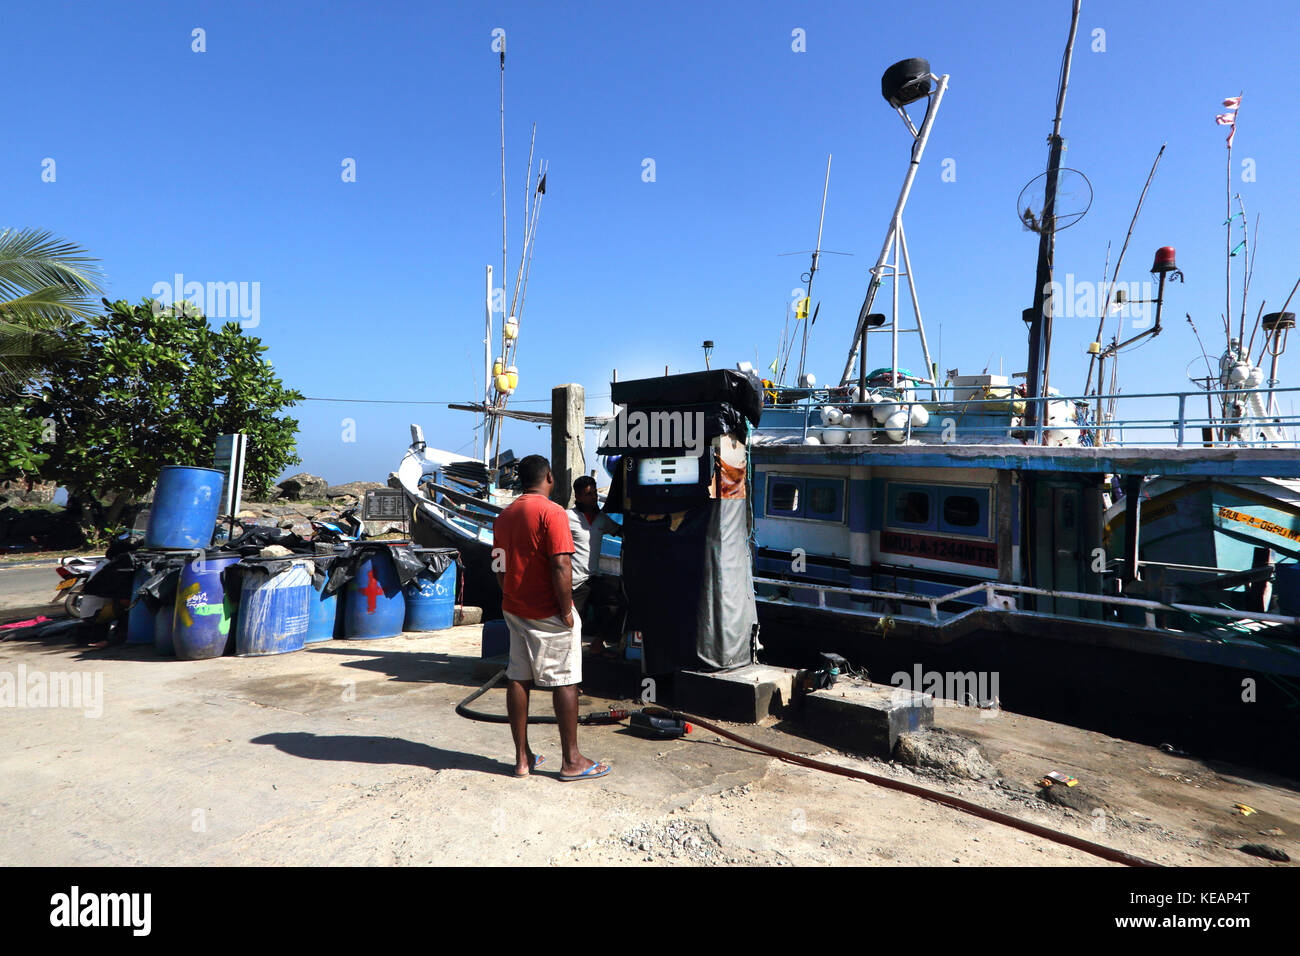 Le port de pêche de Mirissa Province Sri Lanka Hommes bateau de pêche de ravitaillement Banque D'Images